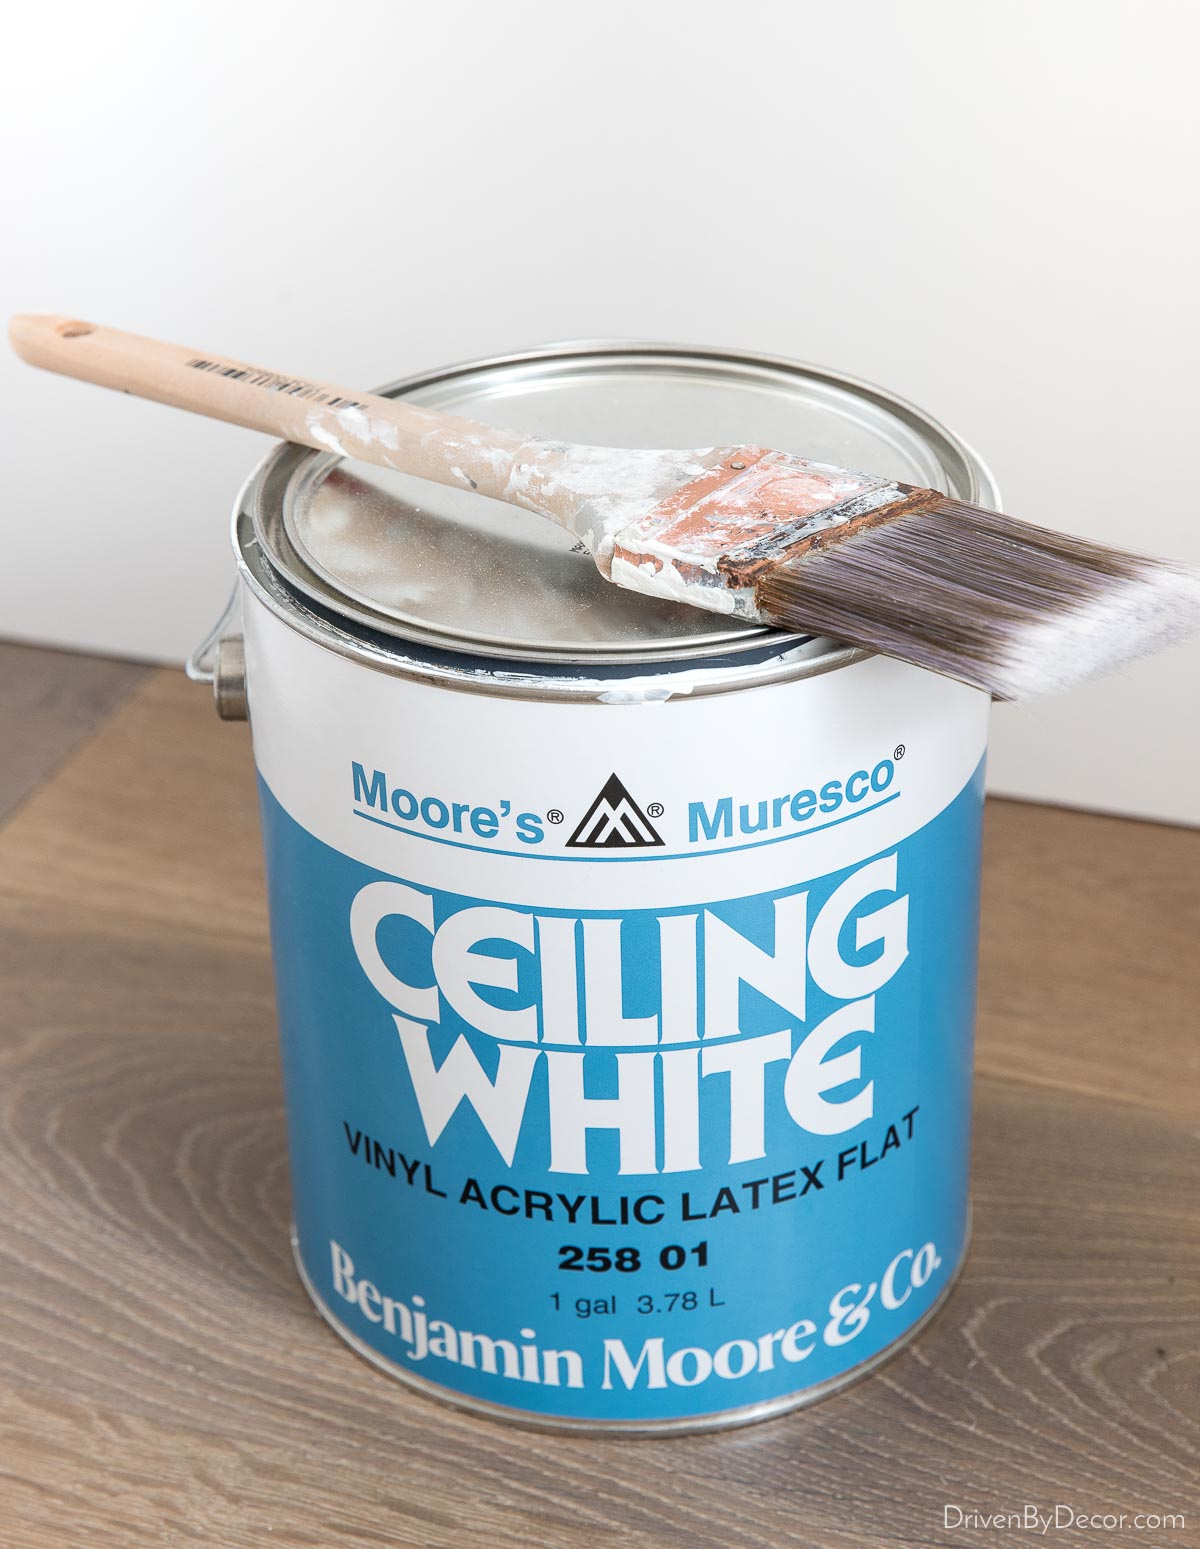 Best ceiling paint - Benjamin Moore Muresco